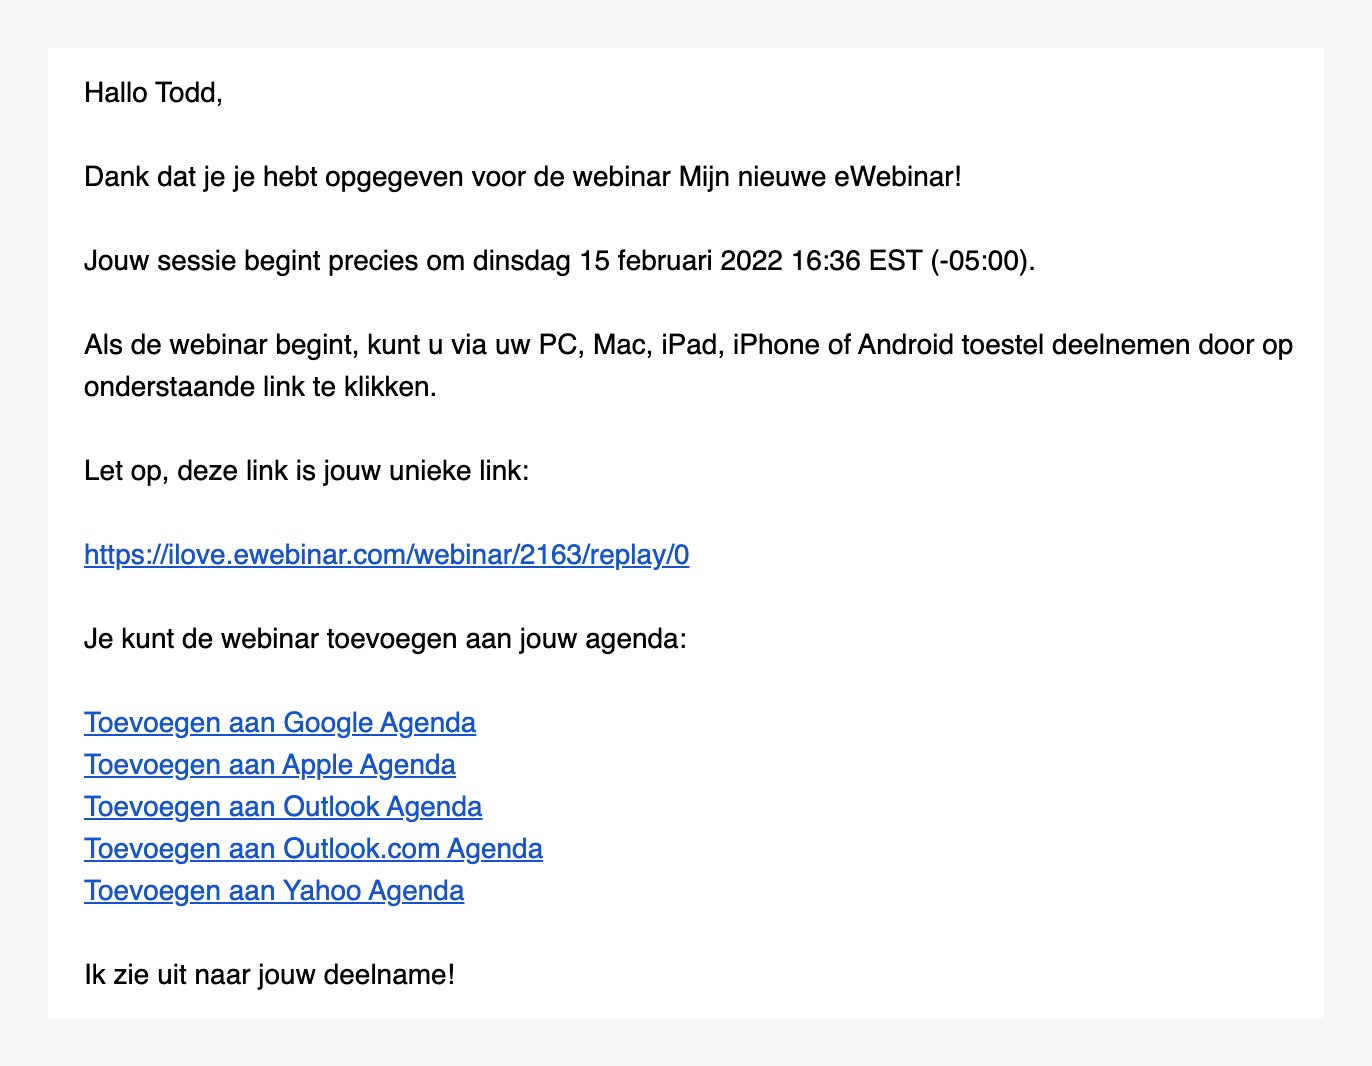 Courriel de confirmation dans le modèle standard d'eWebinar en néerlandais